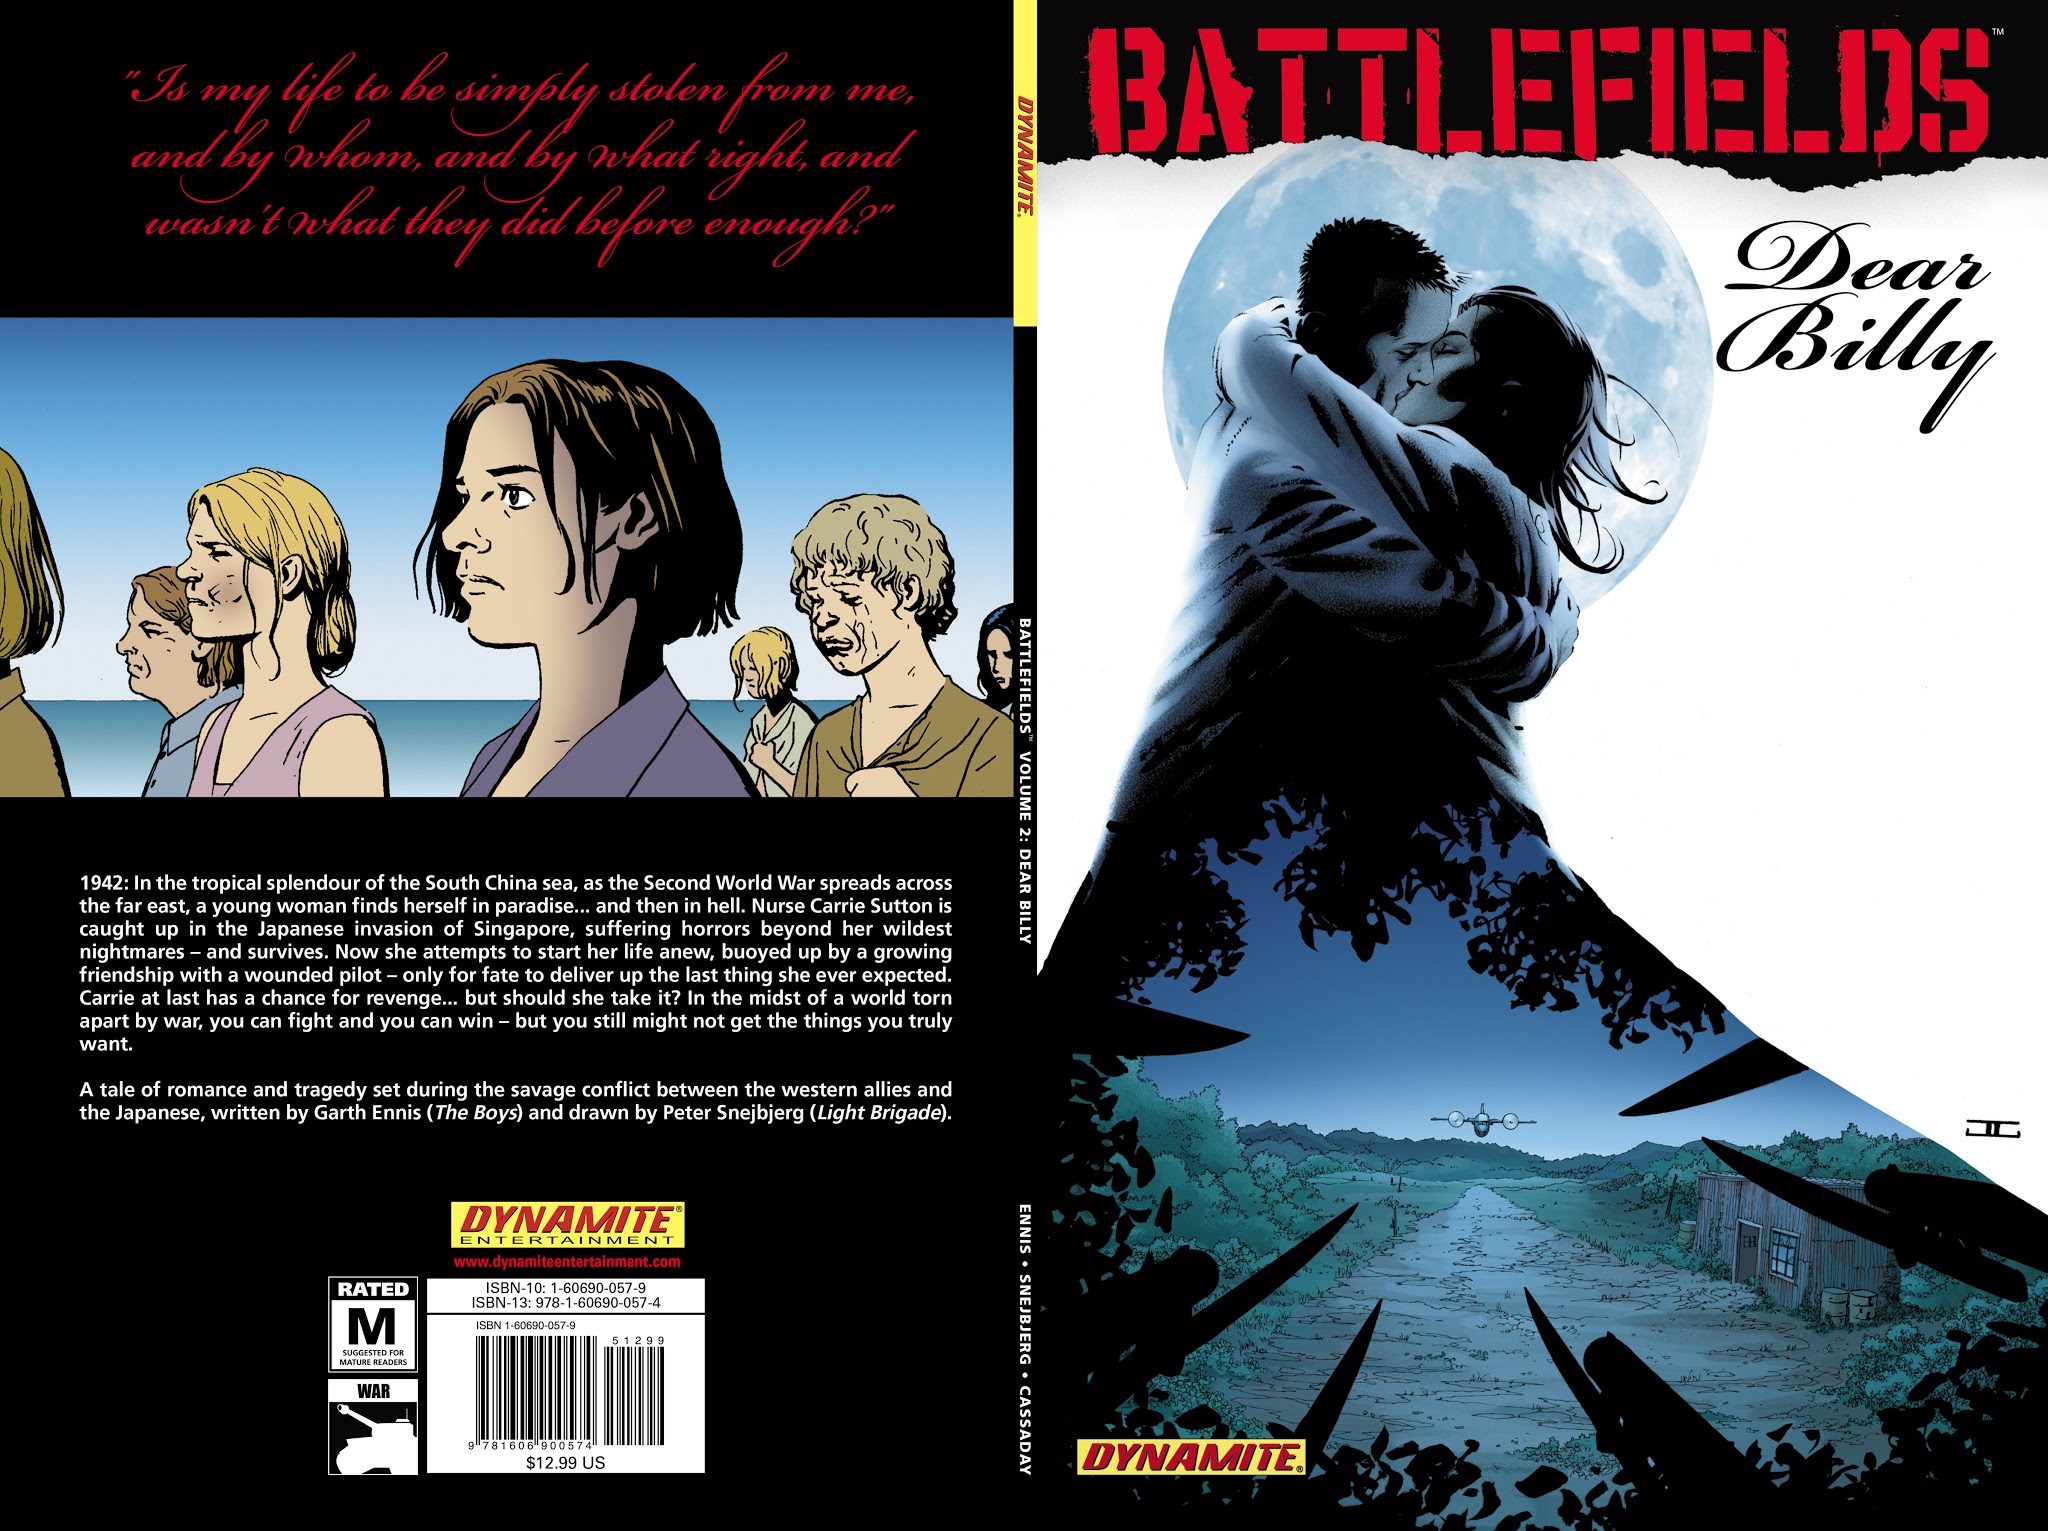 Read online Battlefields: Dear Billy comic -  Issue # TPB - 1